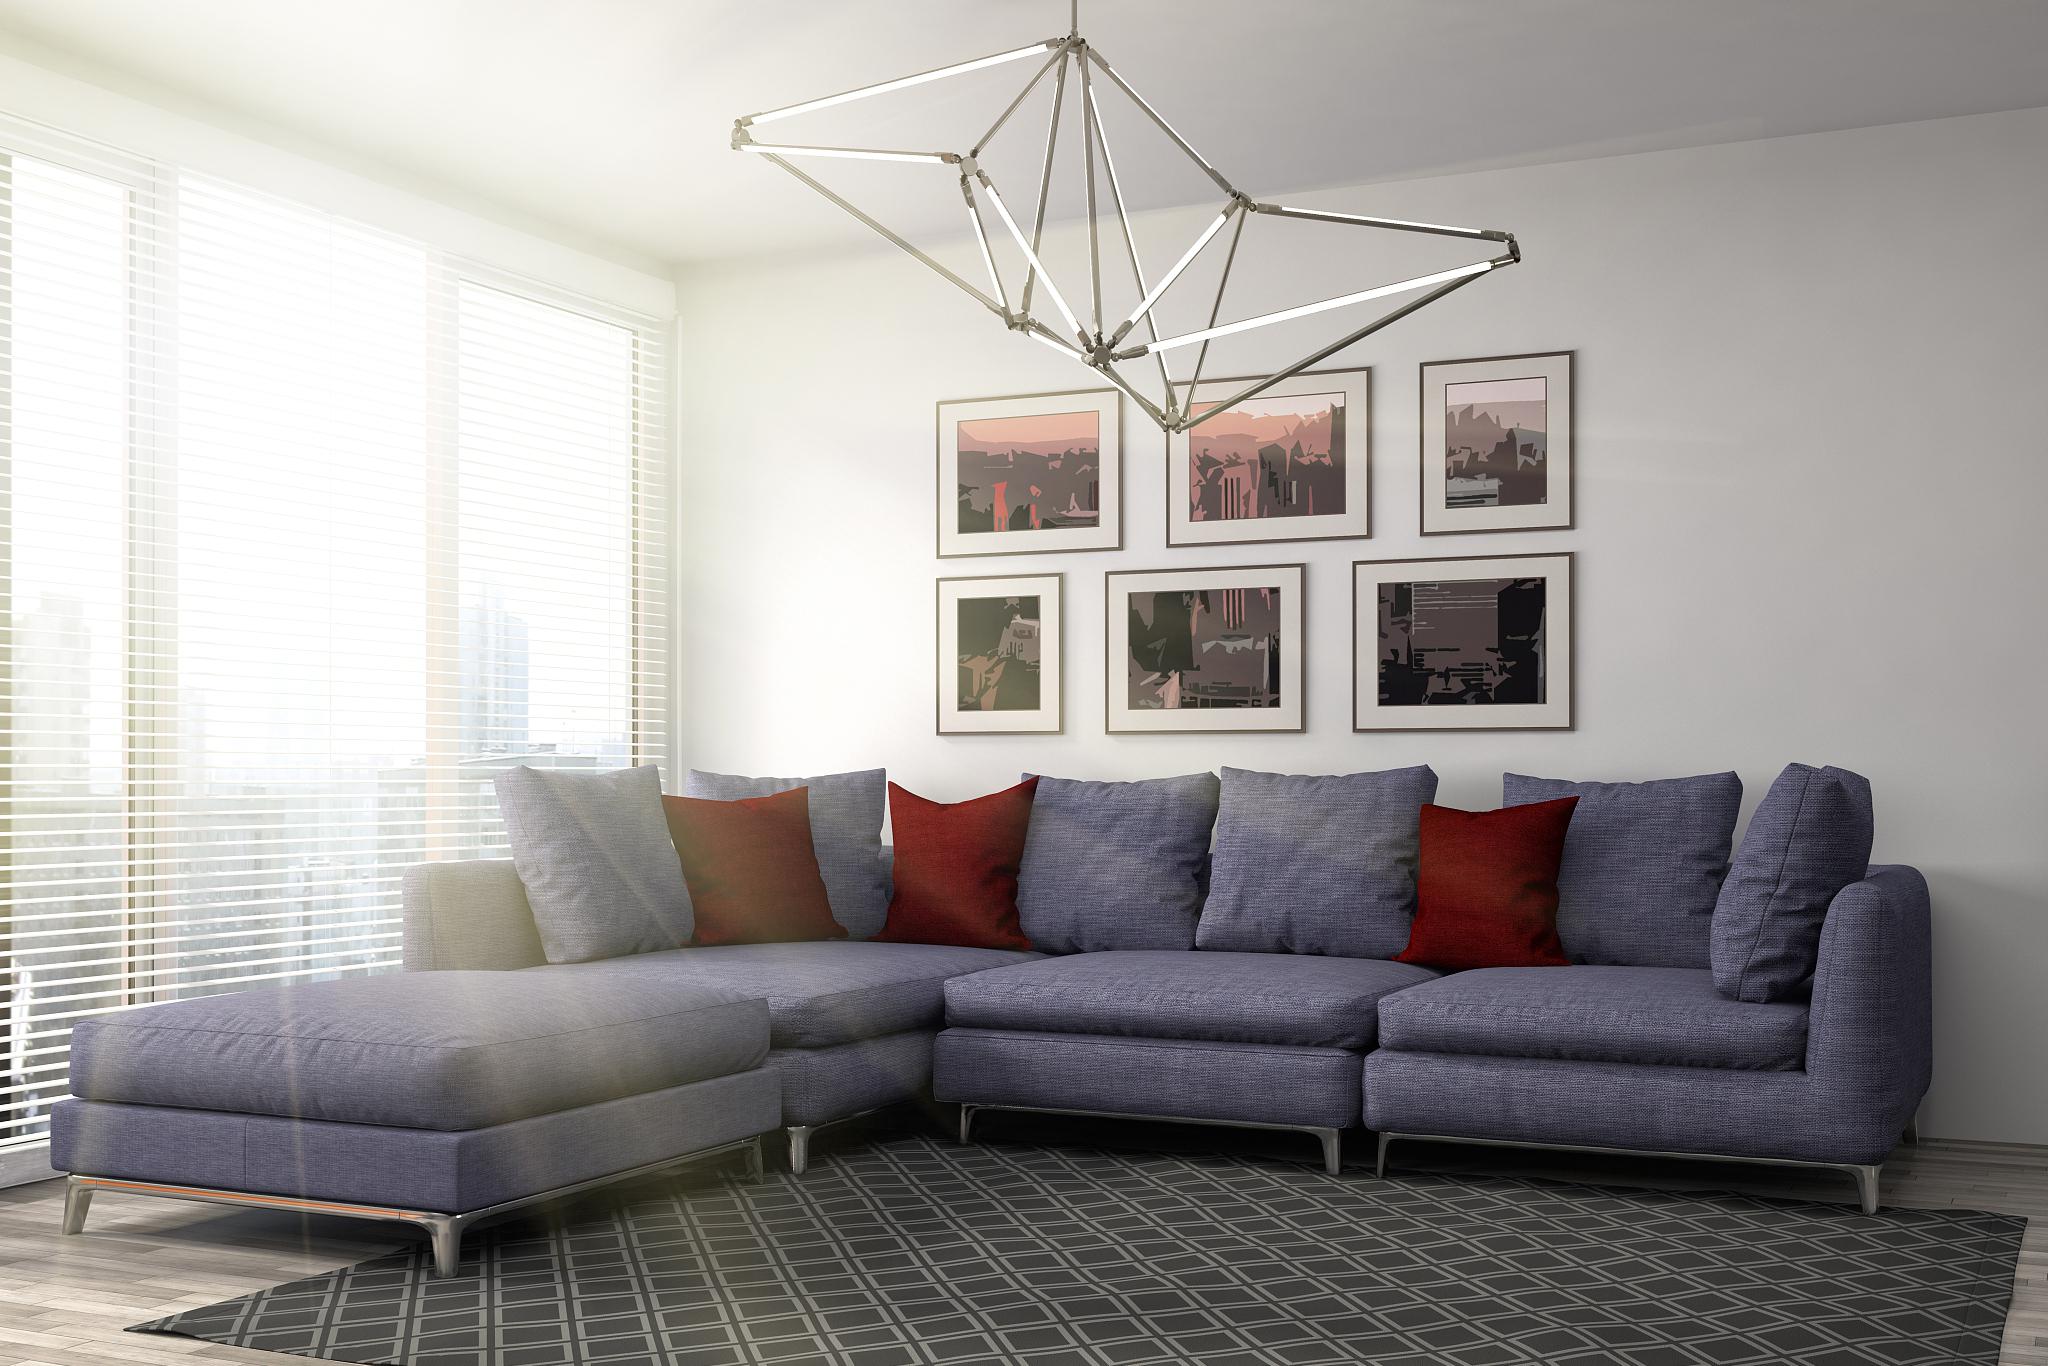 小客厅沙发摆放技巧 在装饰小型客厅时,选择合适的沙发摆放方式至关